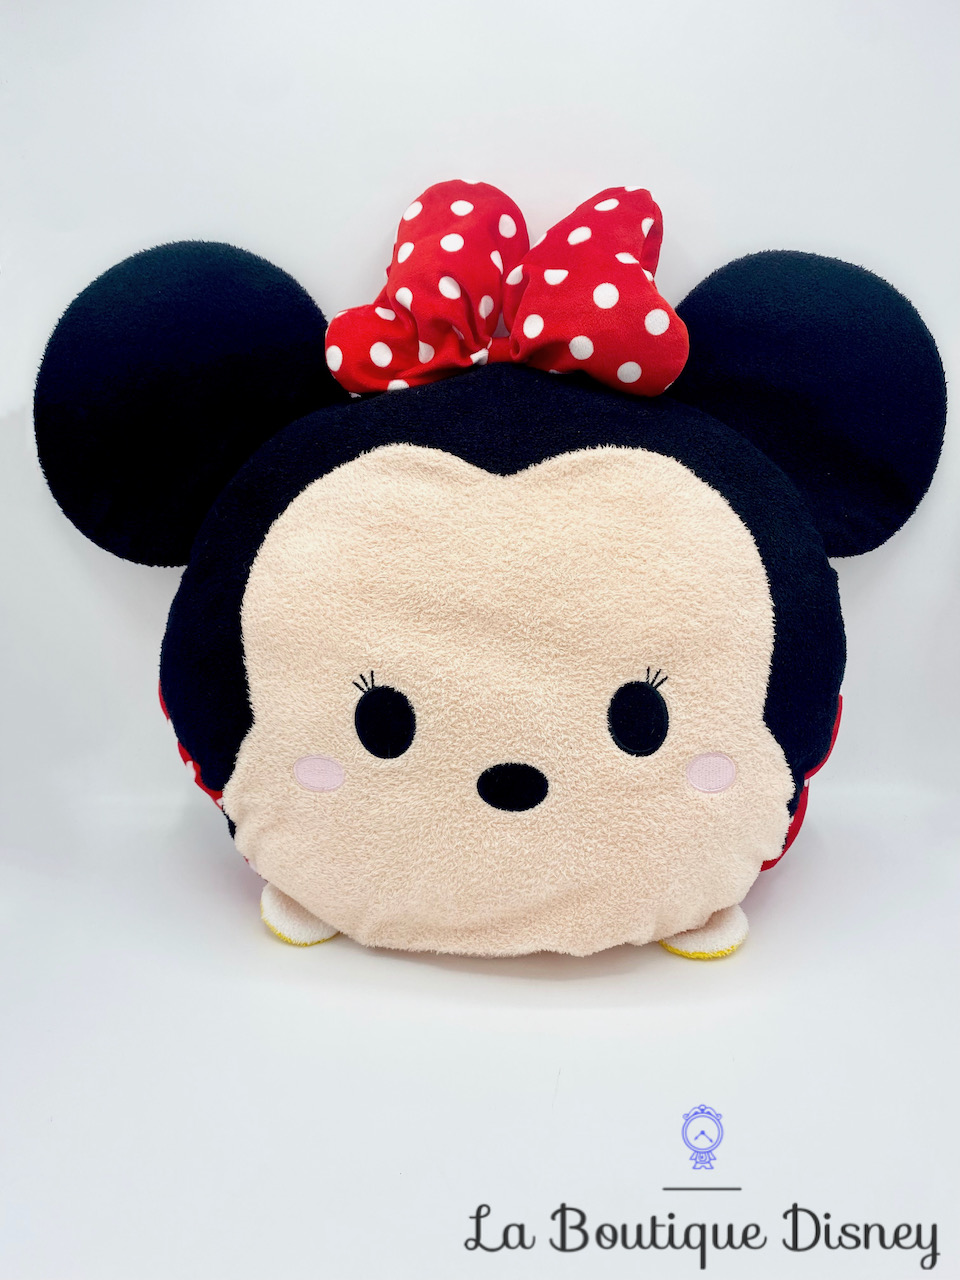 Coussin Minnie Mouse Tsum Tsum Disneyland Paris Disney peluche 45 cm